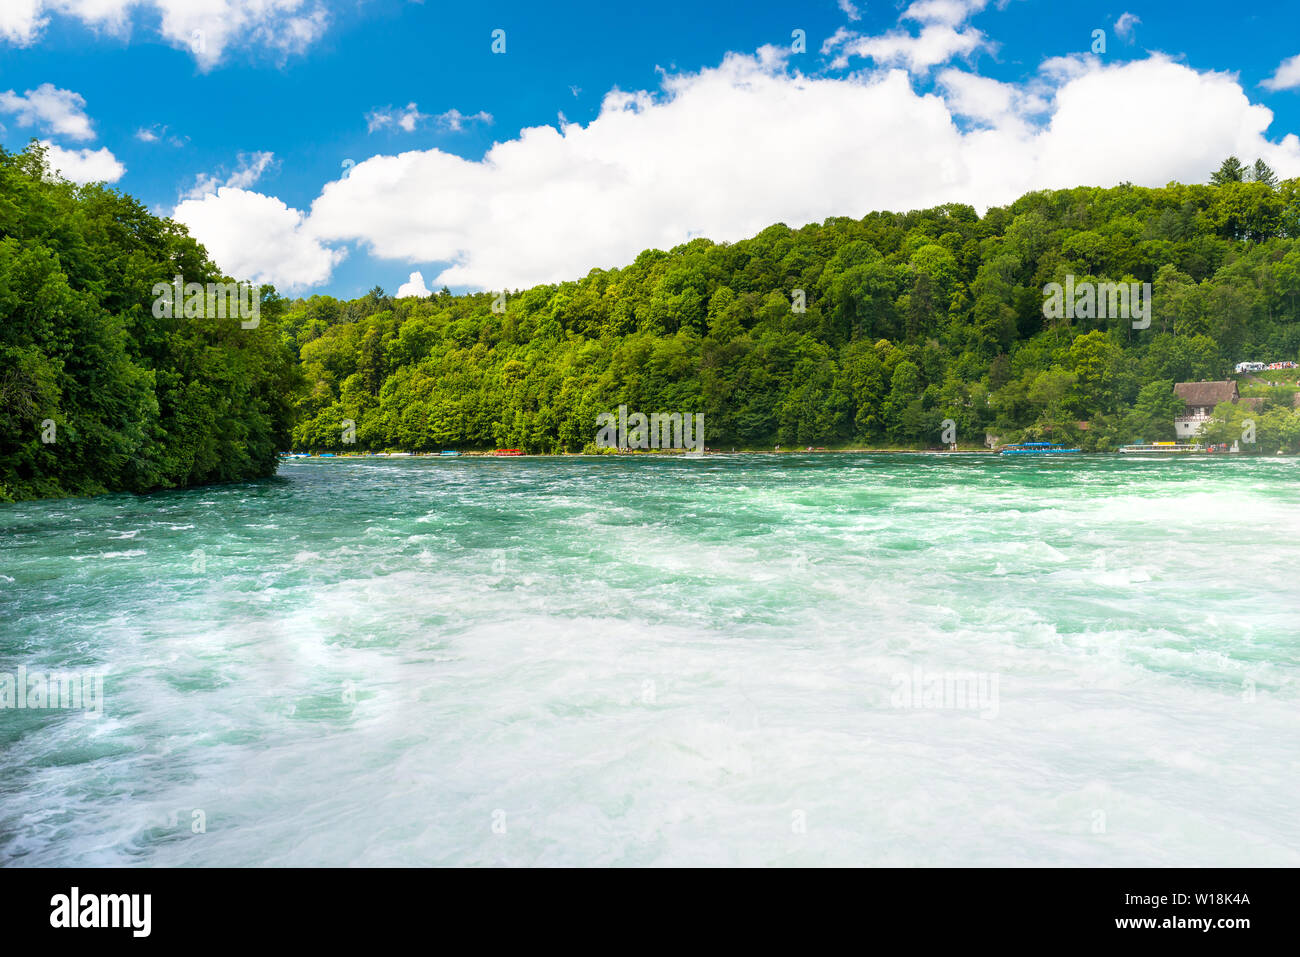 Schöne Aussicht auf den Rhein in Türkis, an der Quelle in der Schweiz, gleich hinter der größte Wasserfall Europas. Stockfoto